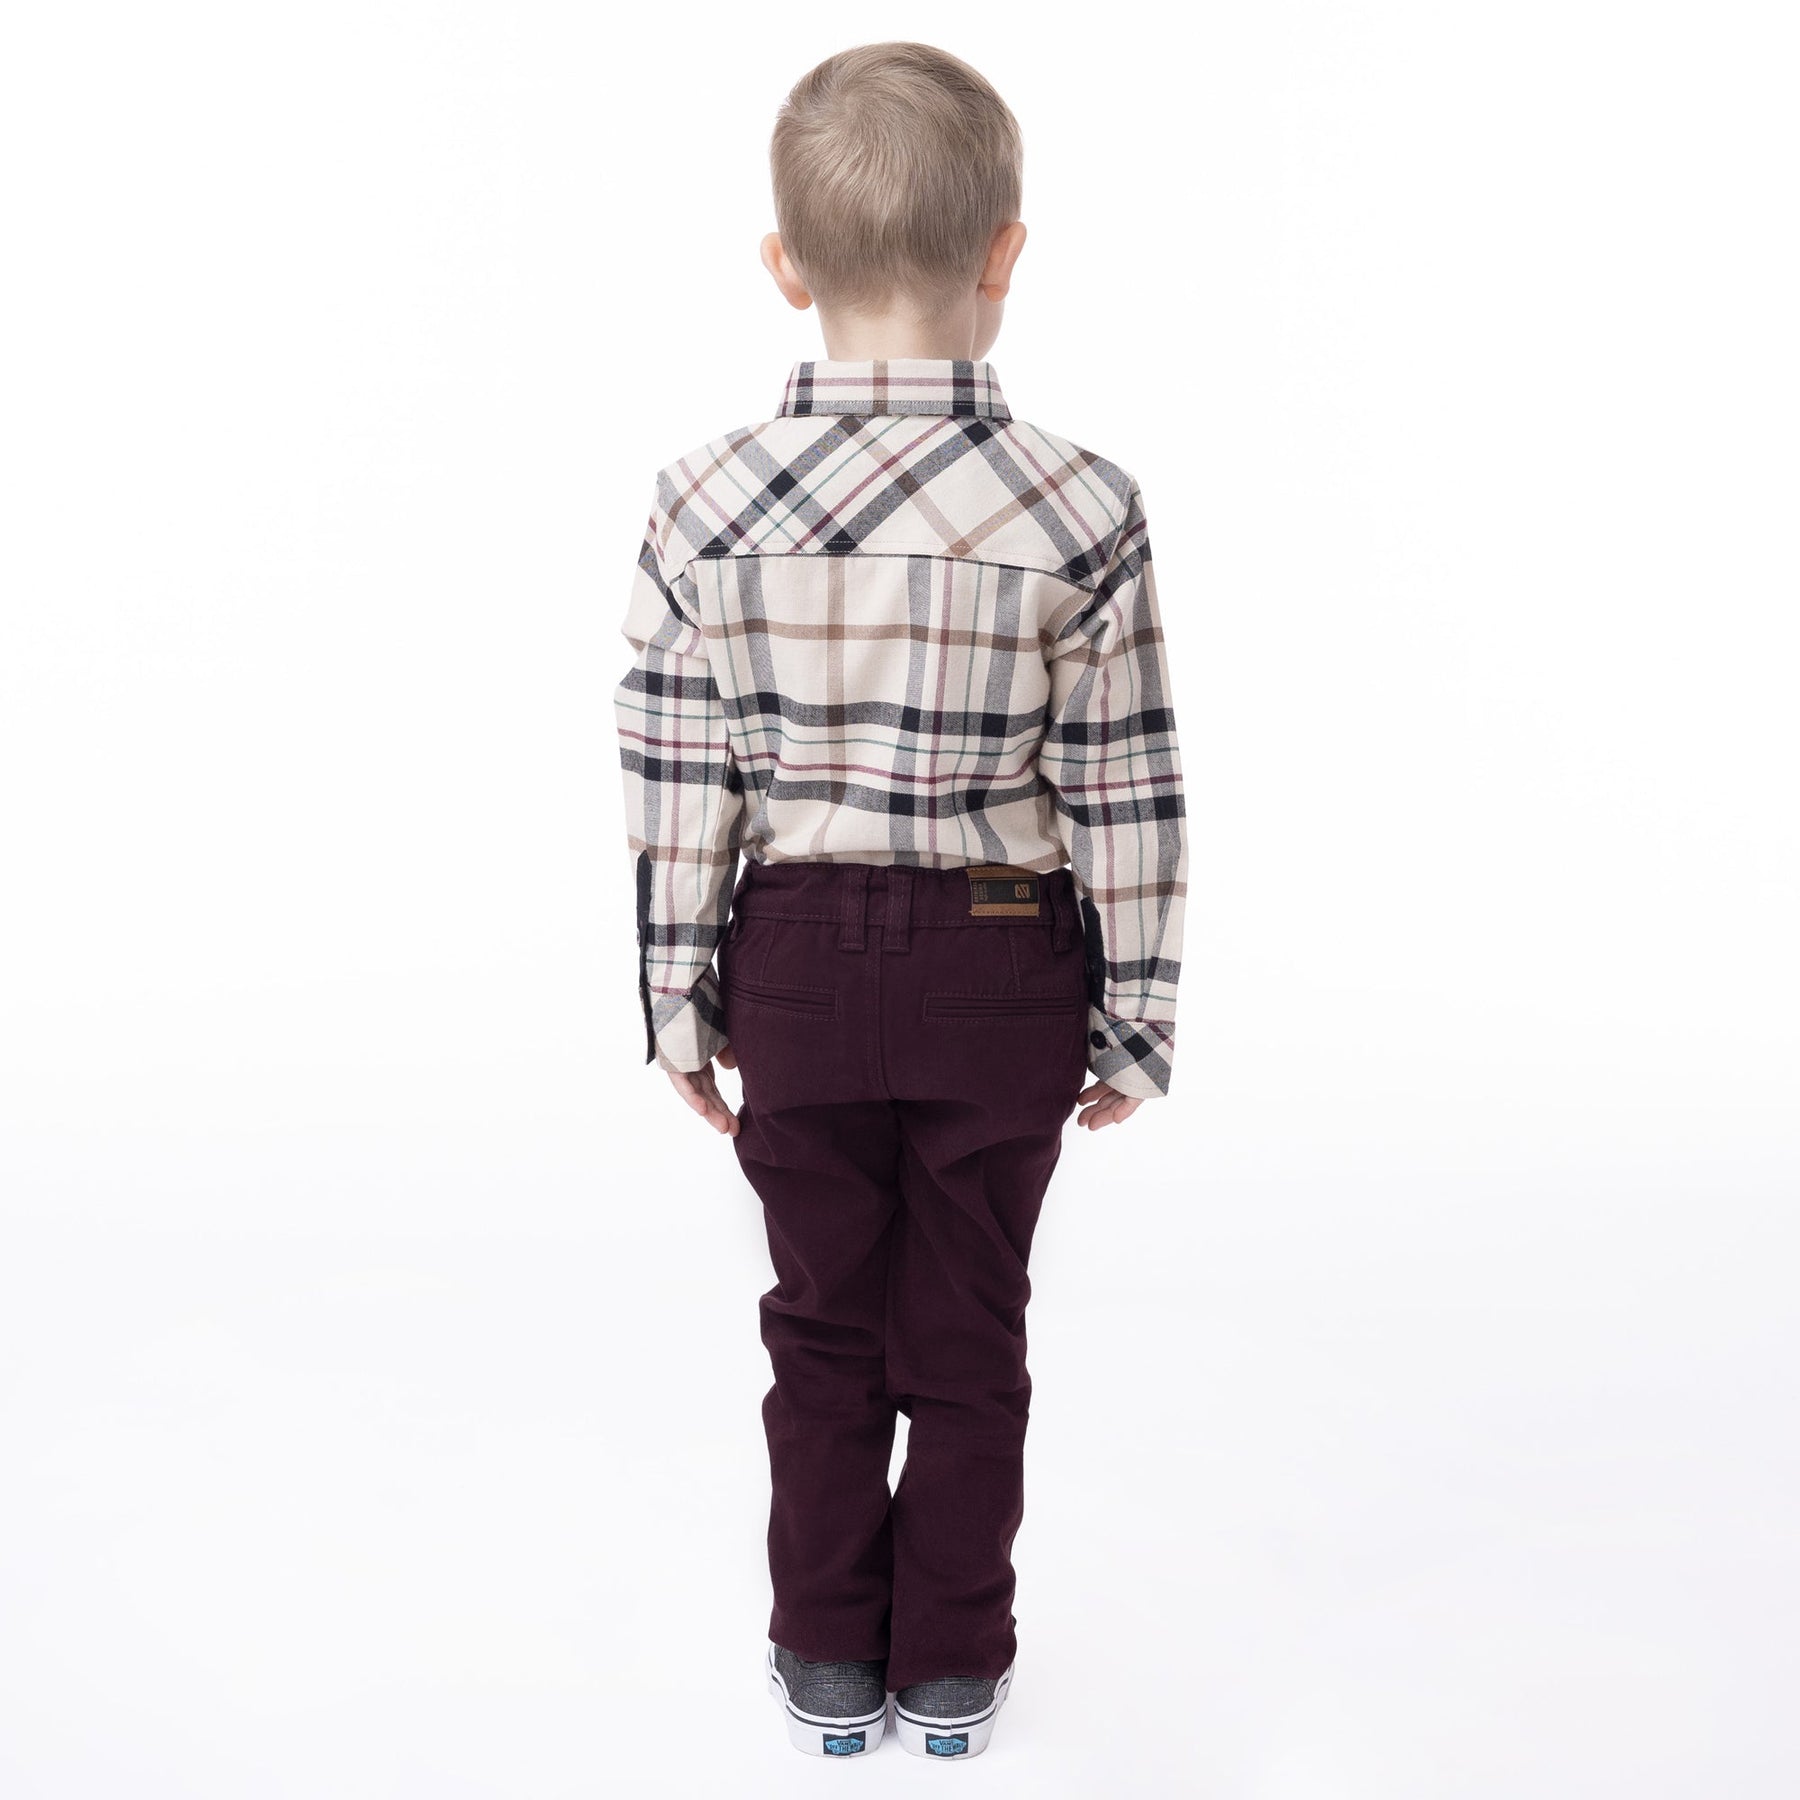 Chemise manches longues pour enfant garçon par Nano | F2325-05 Beige | Boutique Flos, vêtements mode pour bébés et enfants